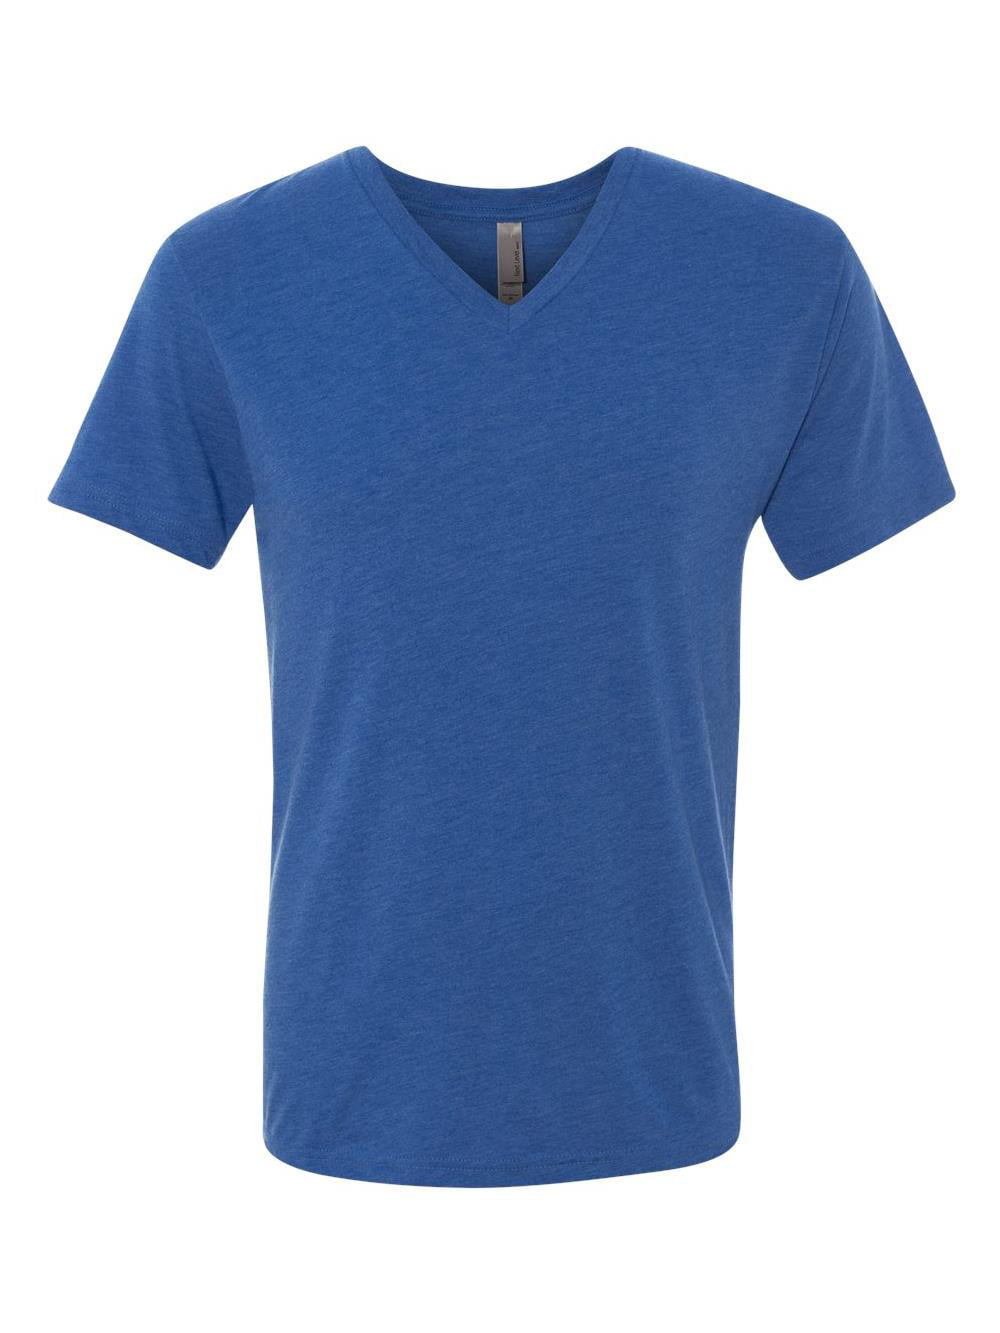 Next Level Apparel - Next Level T-Shirts Triblend V 6040 - Walmart.com